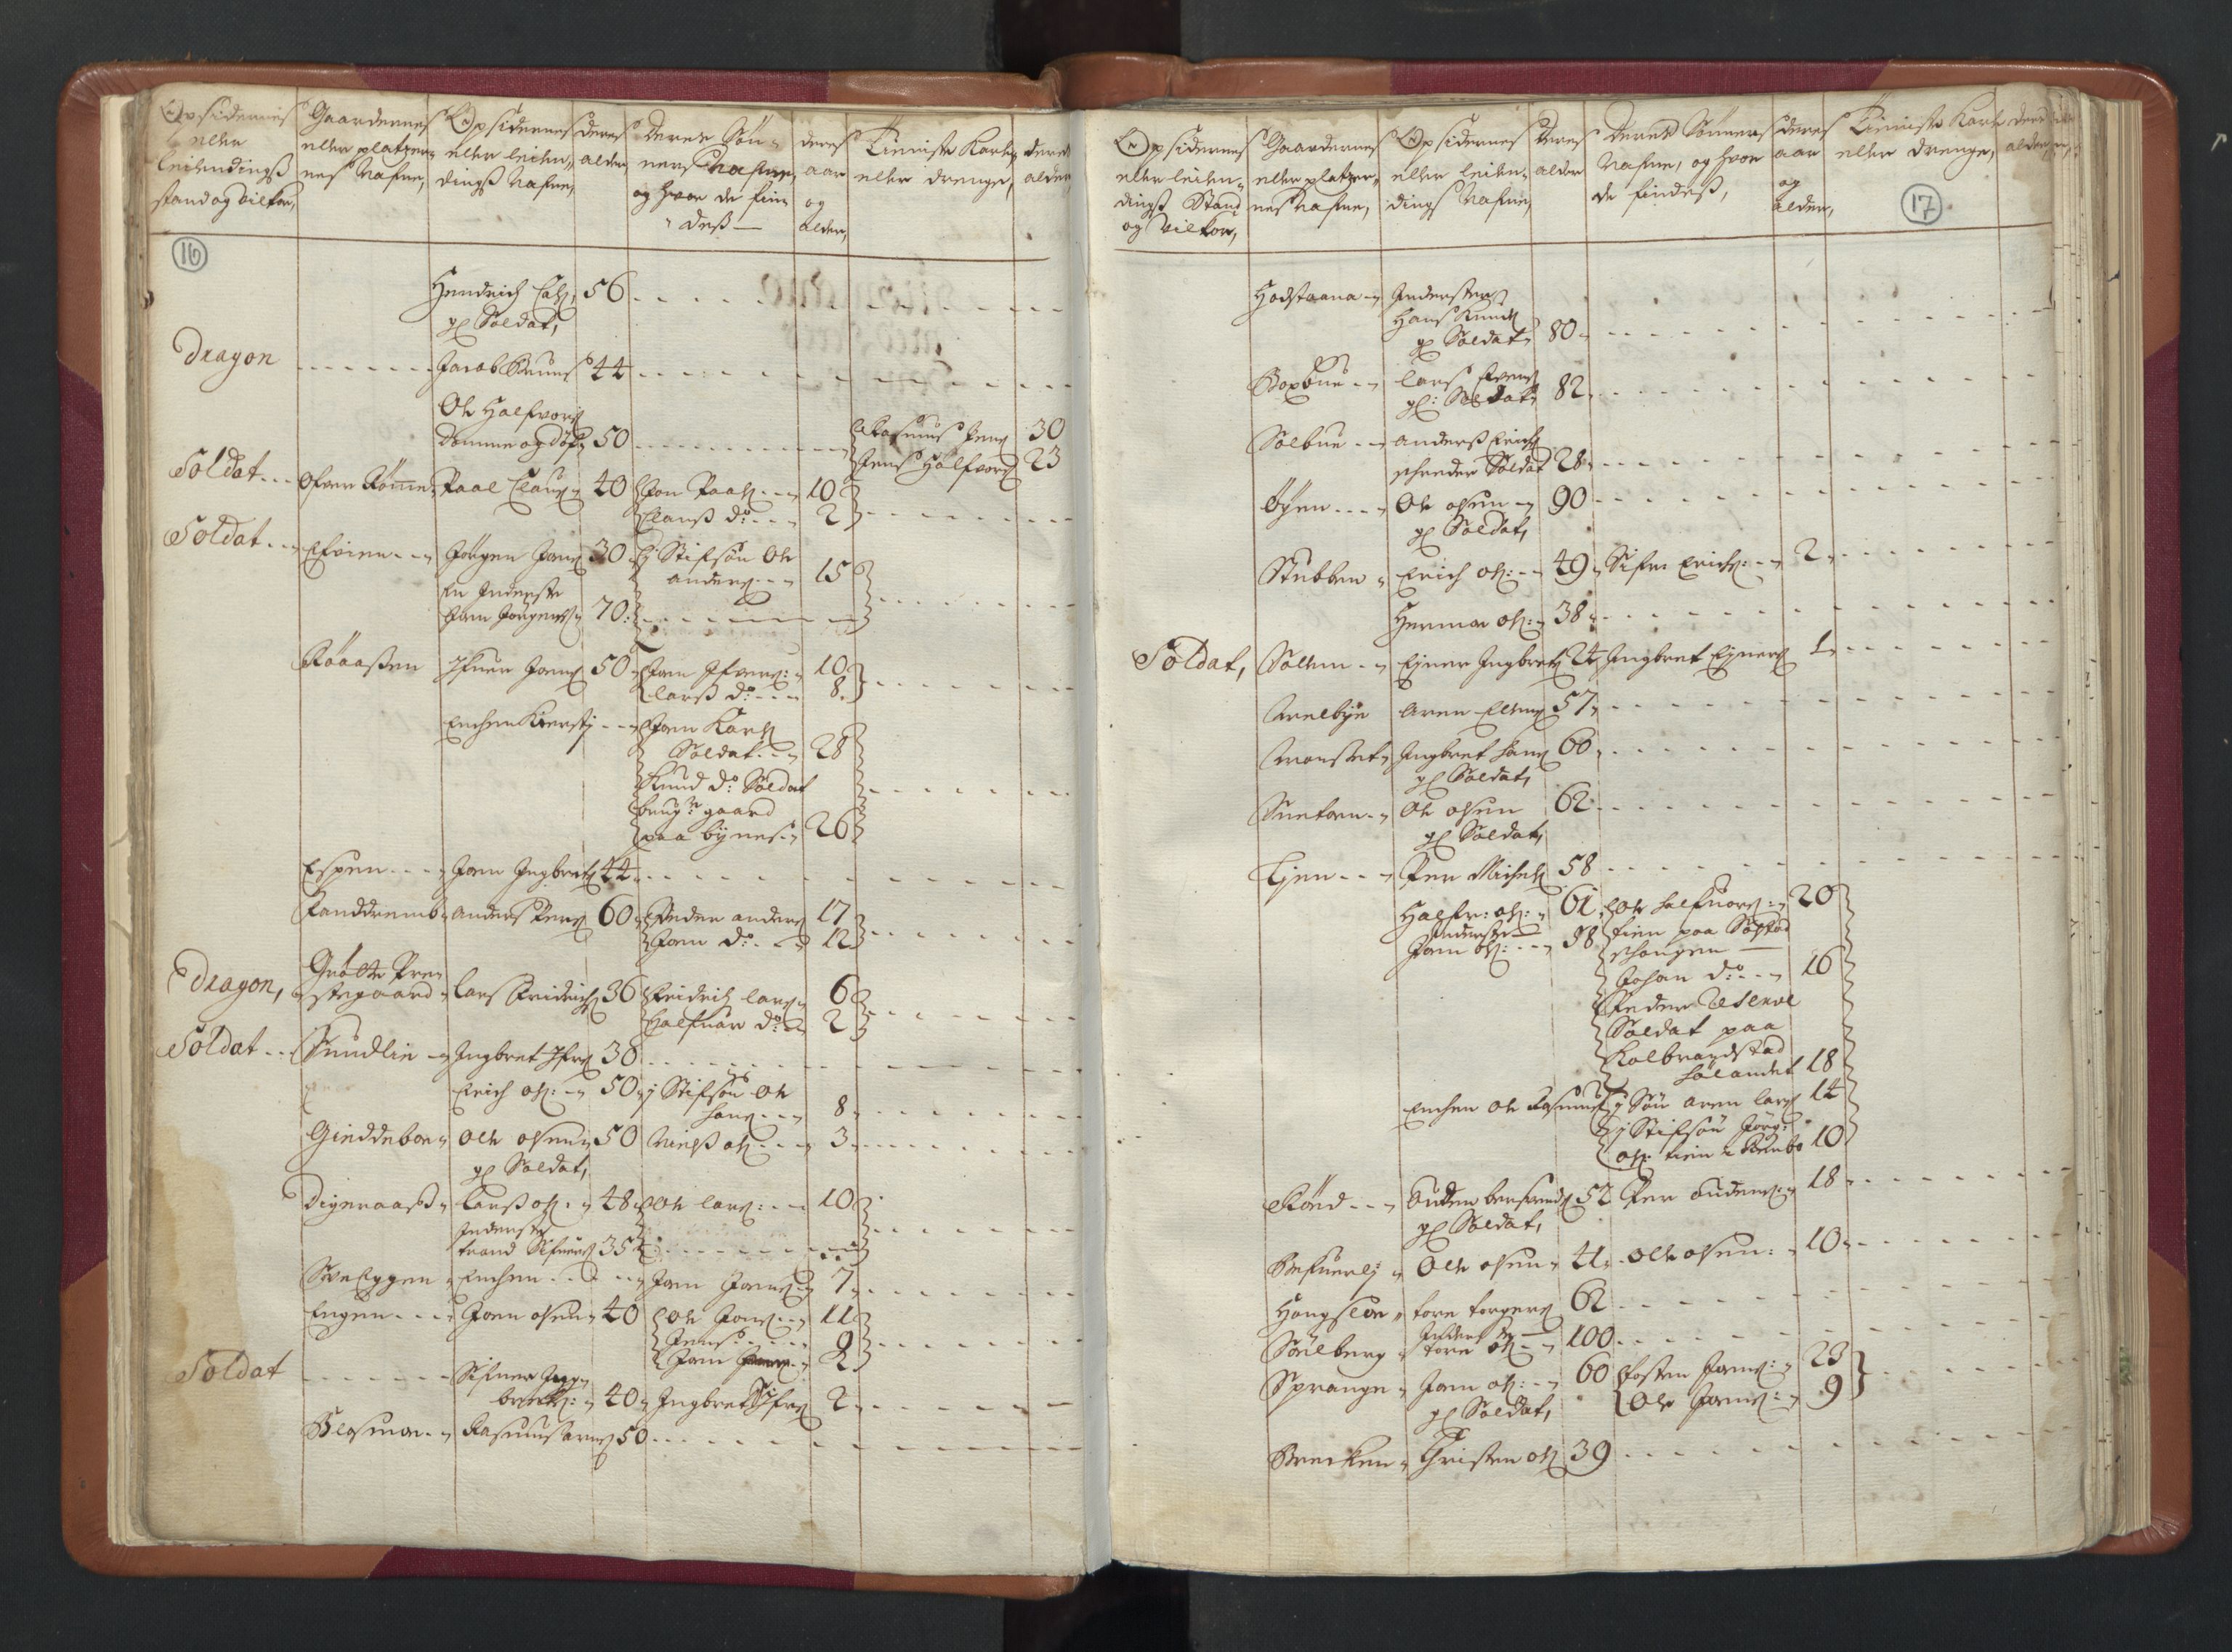 RA, Manntallet 1701, nr. 13: Orkdal fogderi og Gauldal fogderi med Røros kobberverk, 1701, s. 16-17